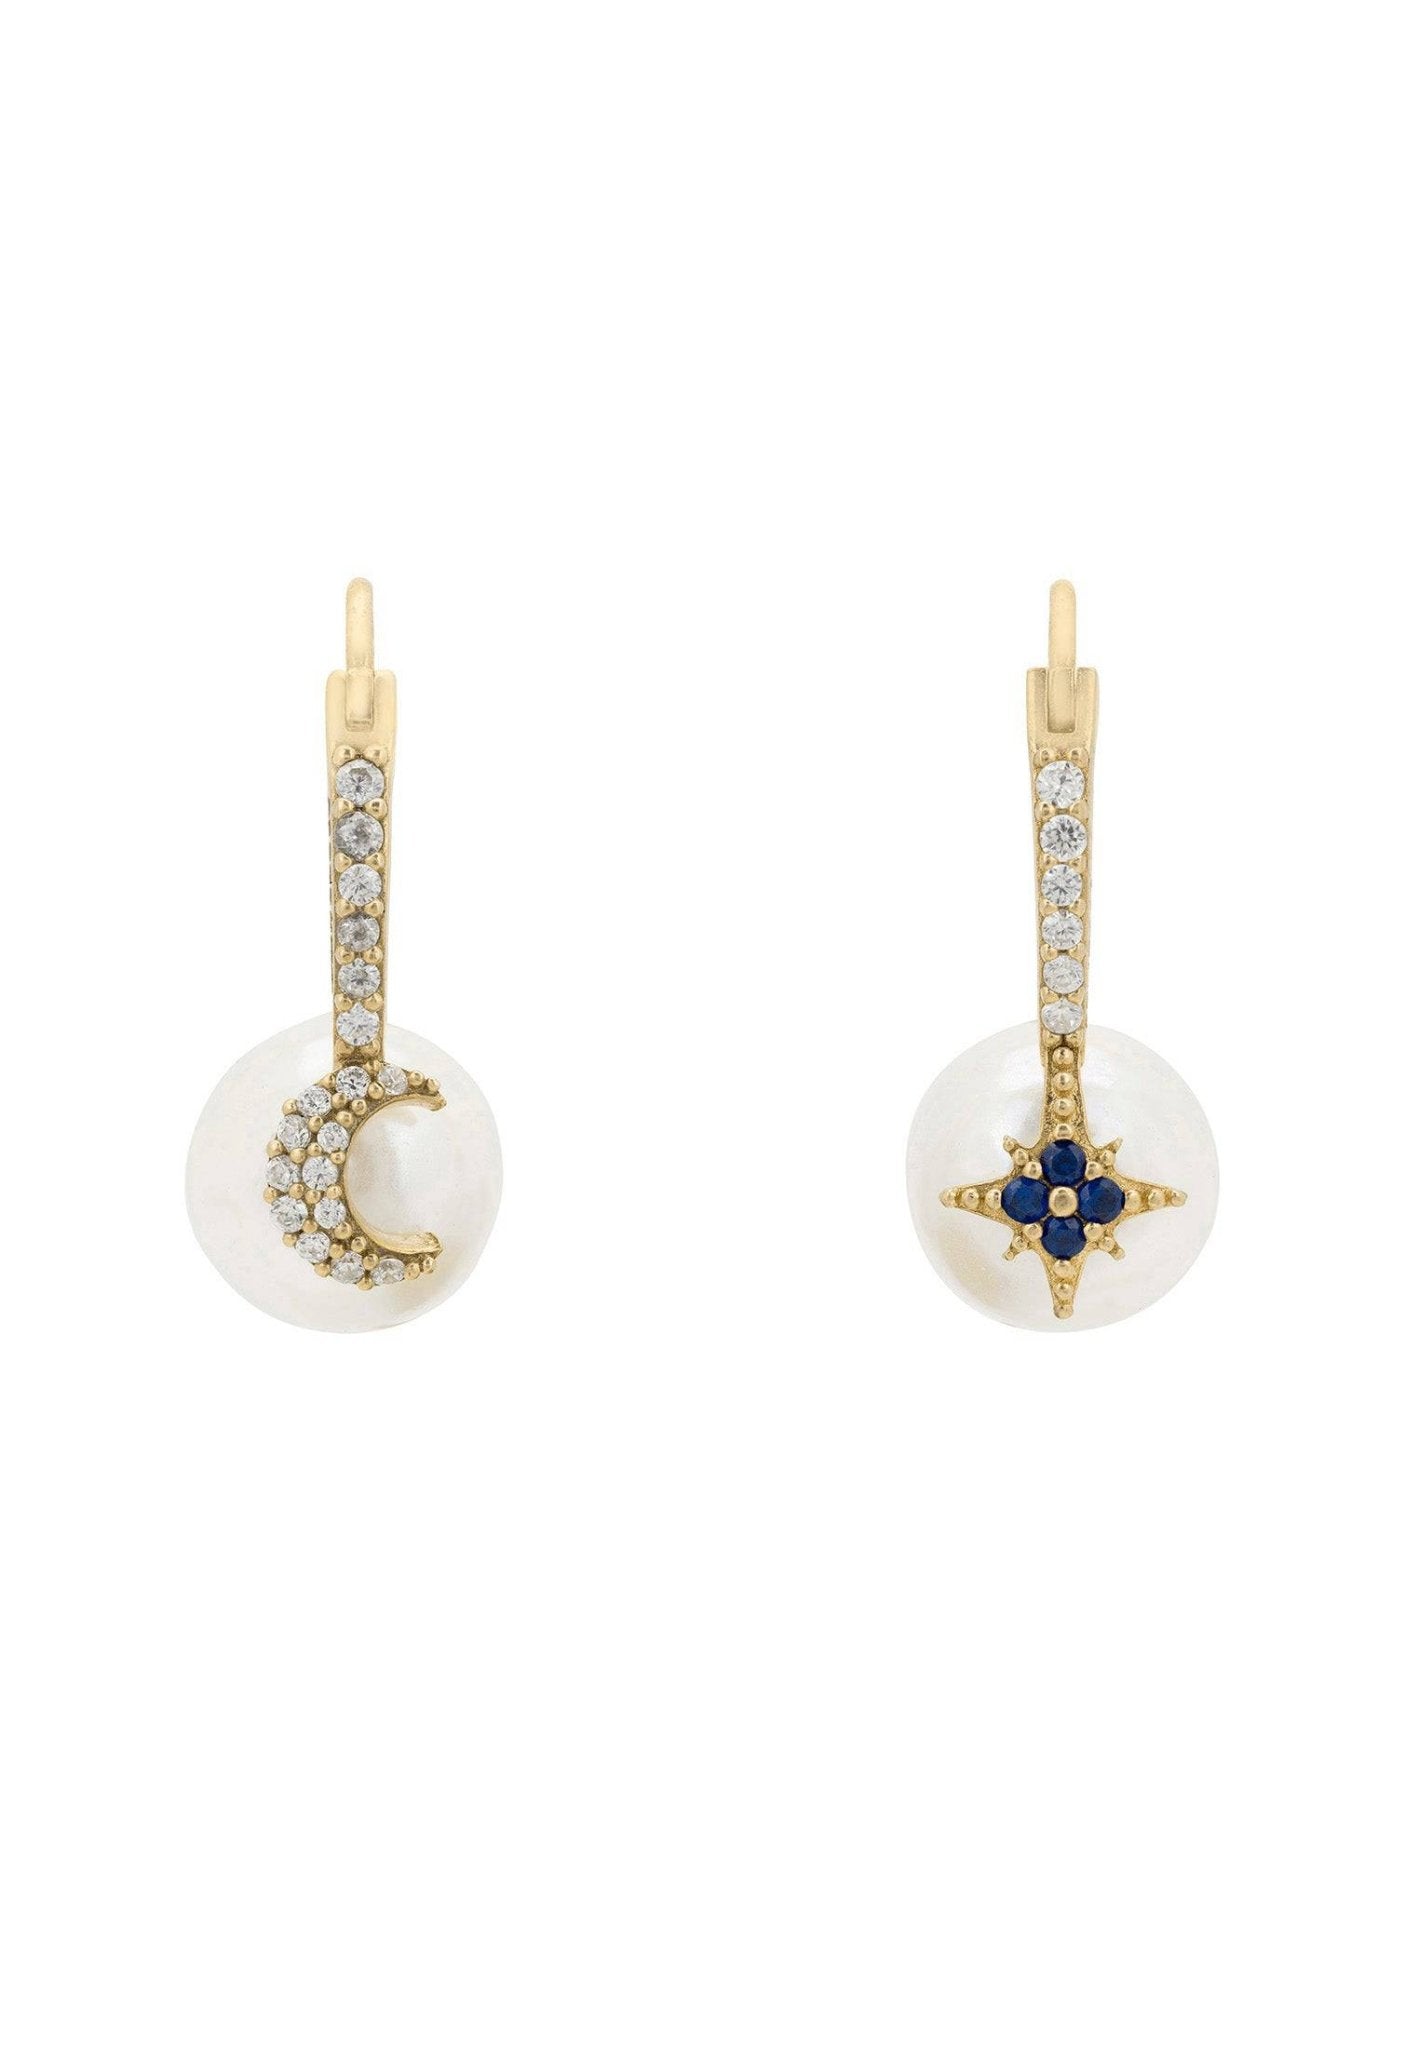 Pearl Moon & Star Earrings Gold - LATELITA Earrings